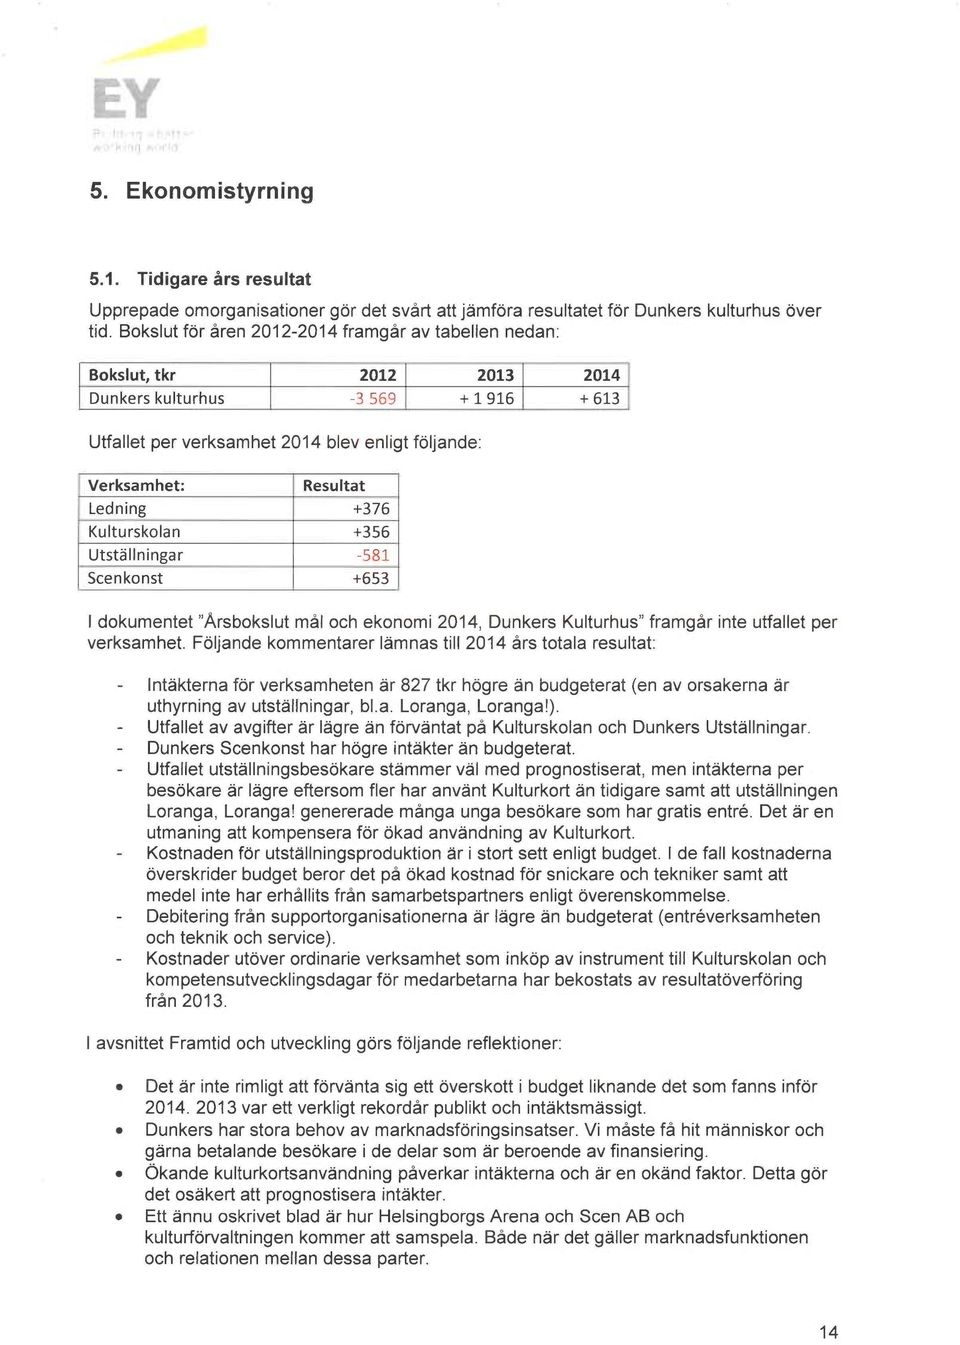 +376 Kulturskolan +356 Utställningar -581 Scenkonst +653 dokumentet "Årsbokslut mål och ekonomi 2014, bunkers Kulturhus" framgår finte utfallet per verksamhet.